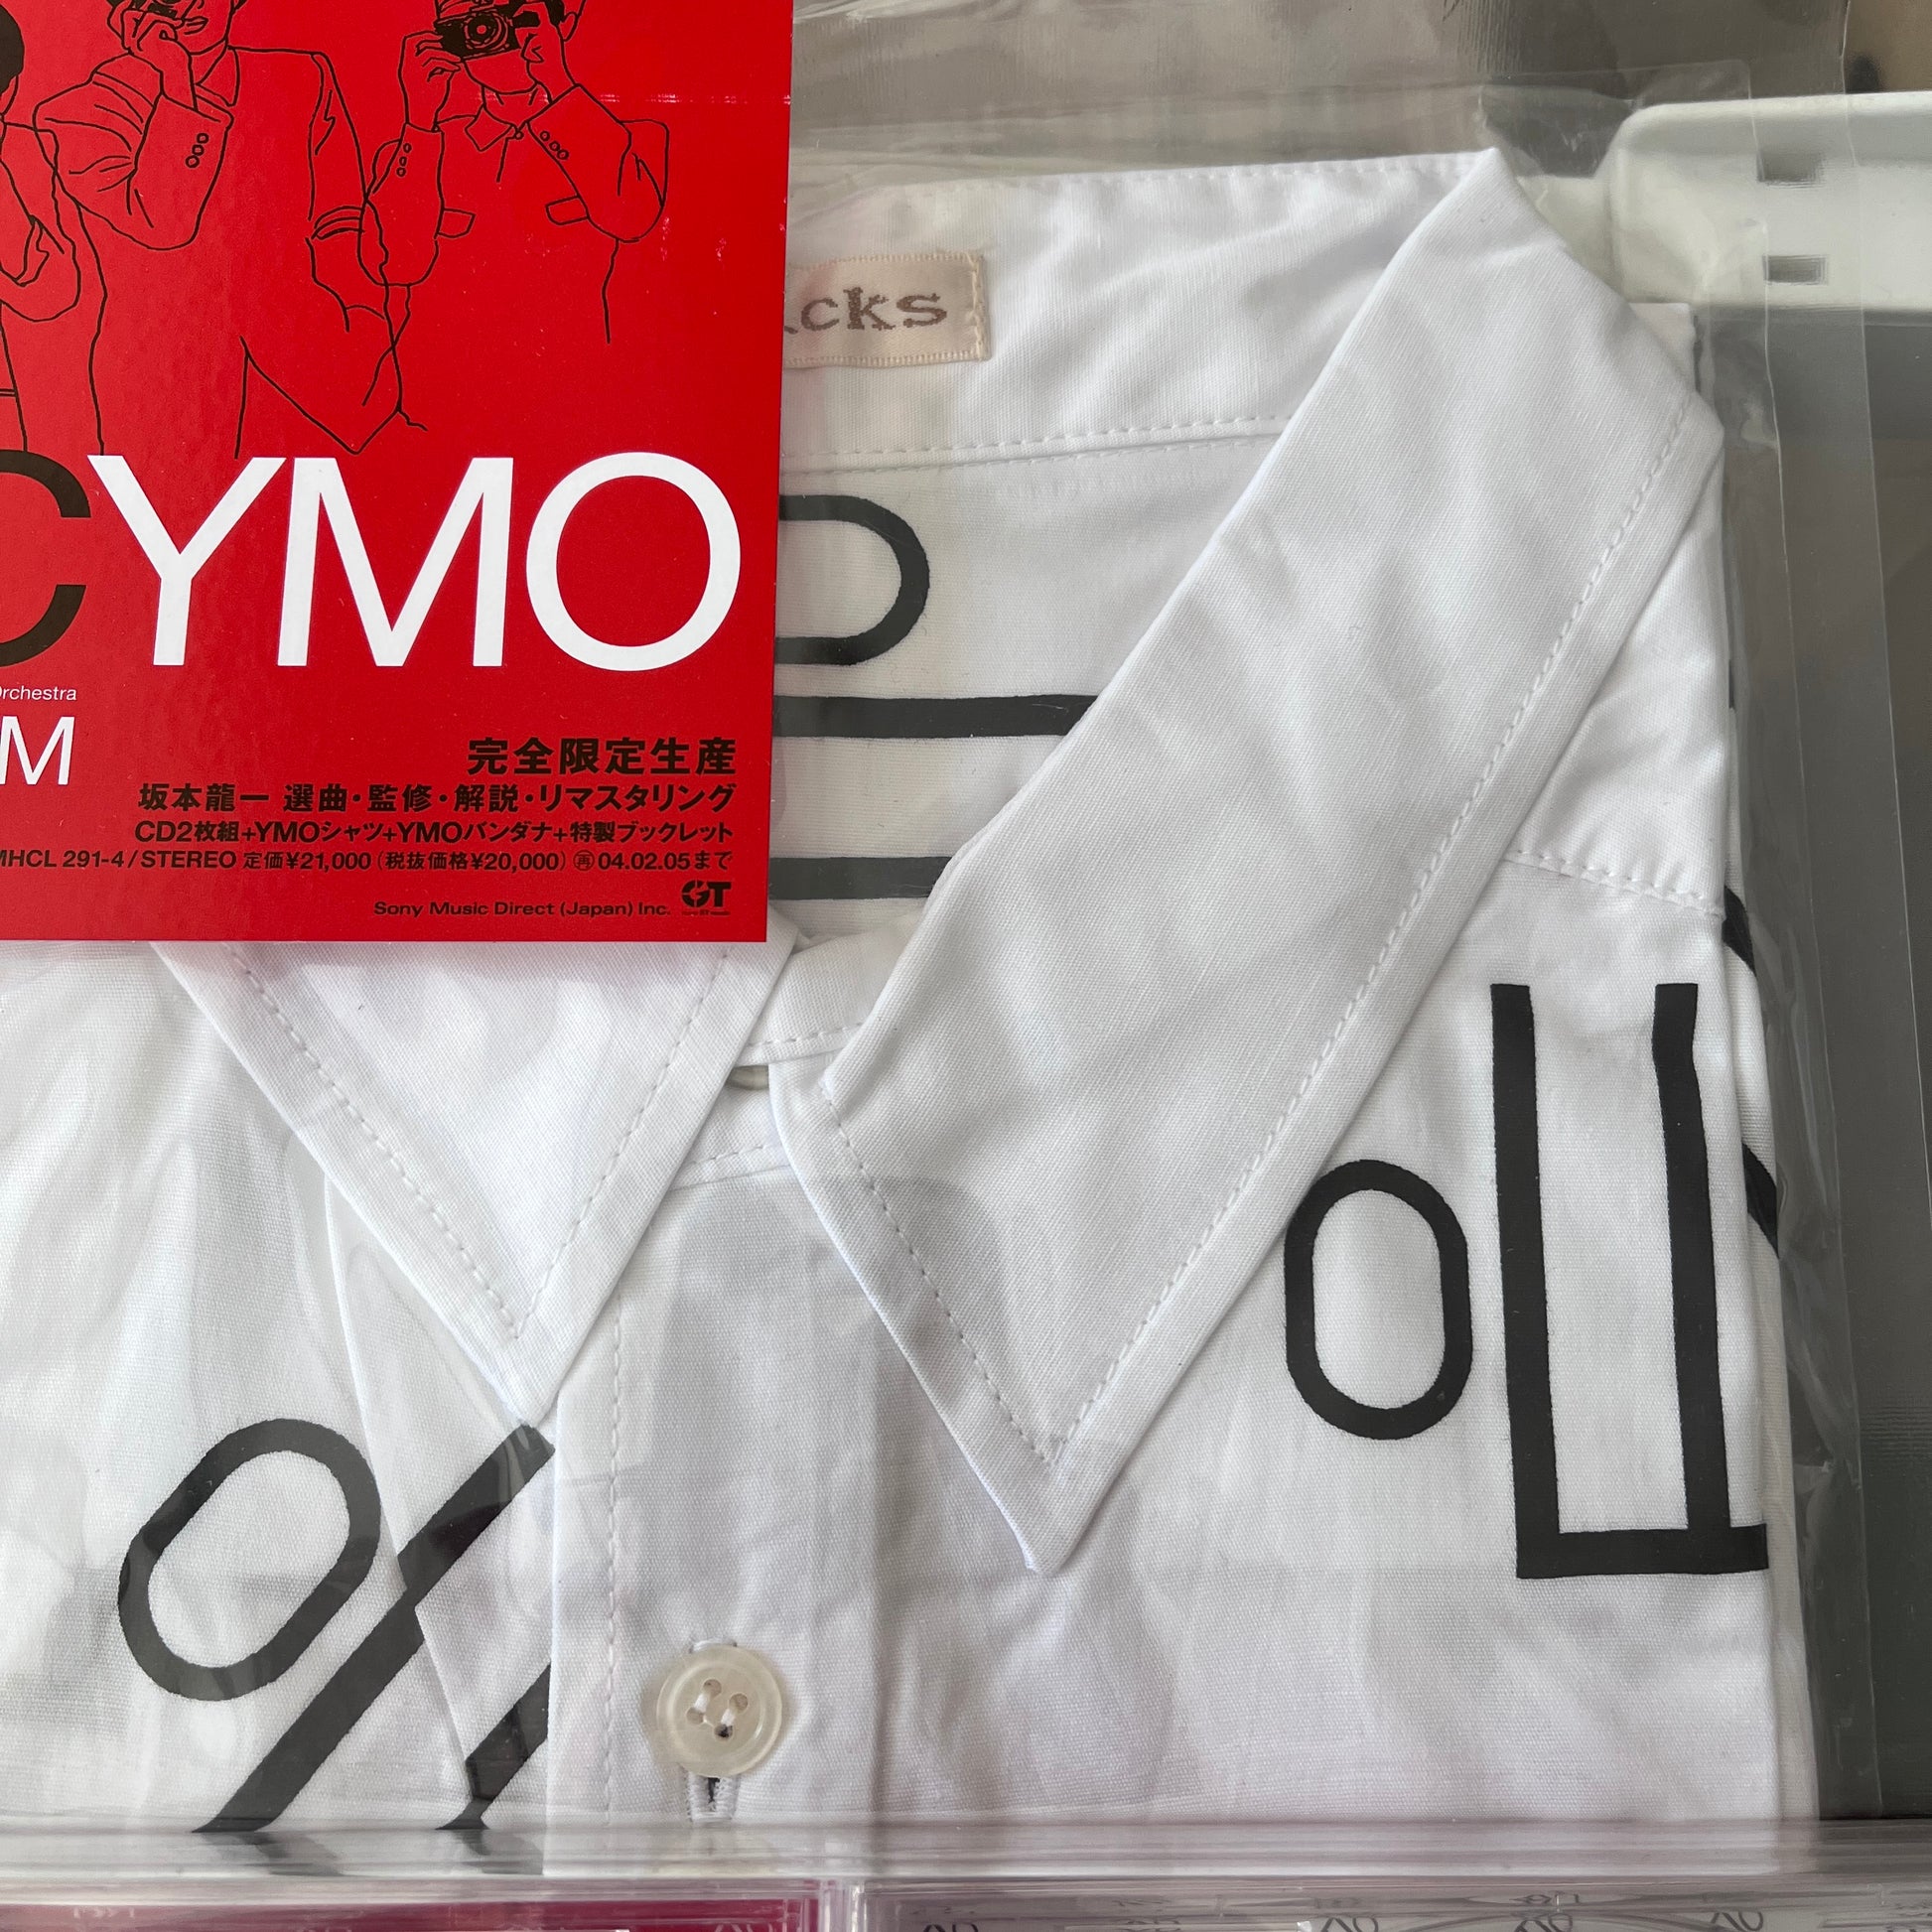 Yellow Magic Orchestra – UC YMO Premium